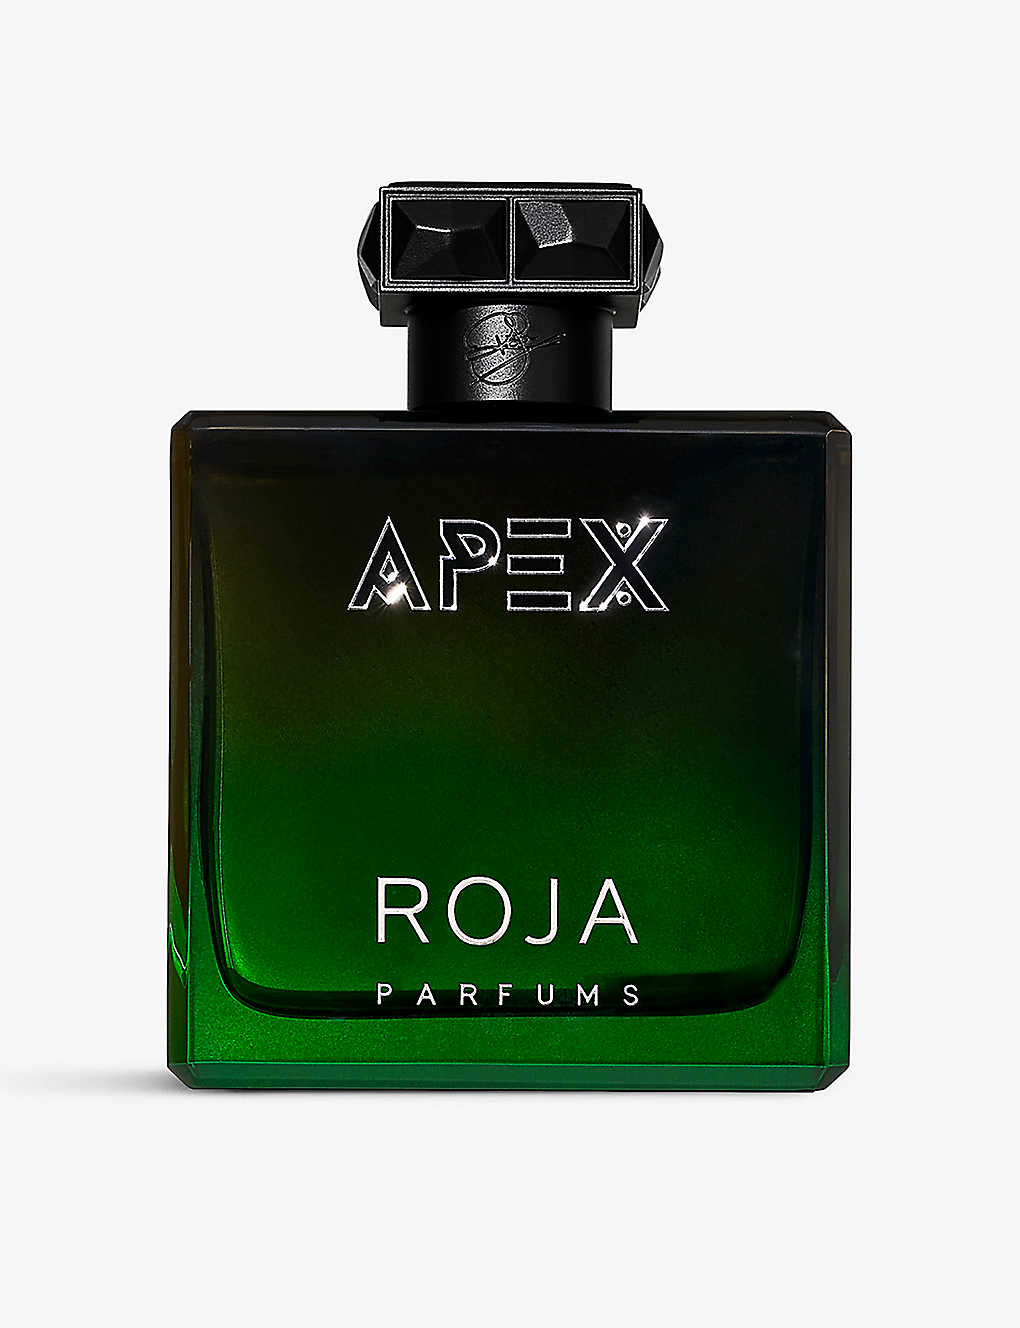 Roja Parfums Apex Eau De Parfum 100ml